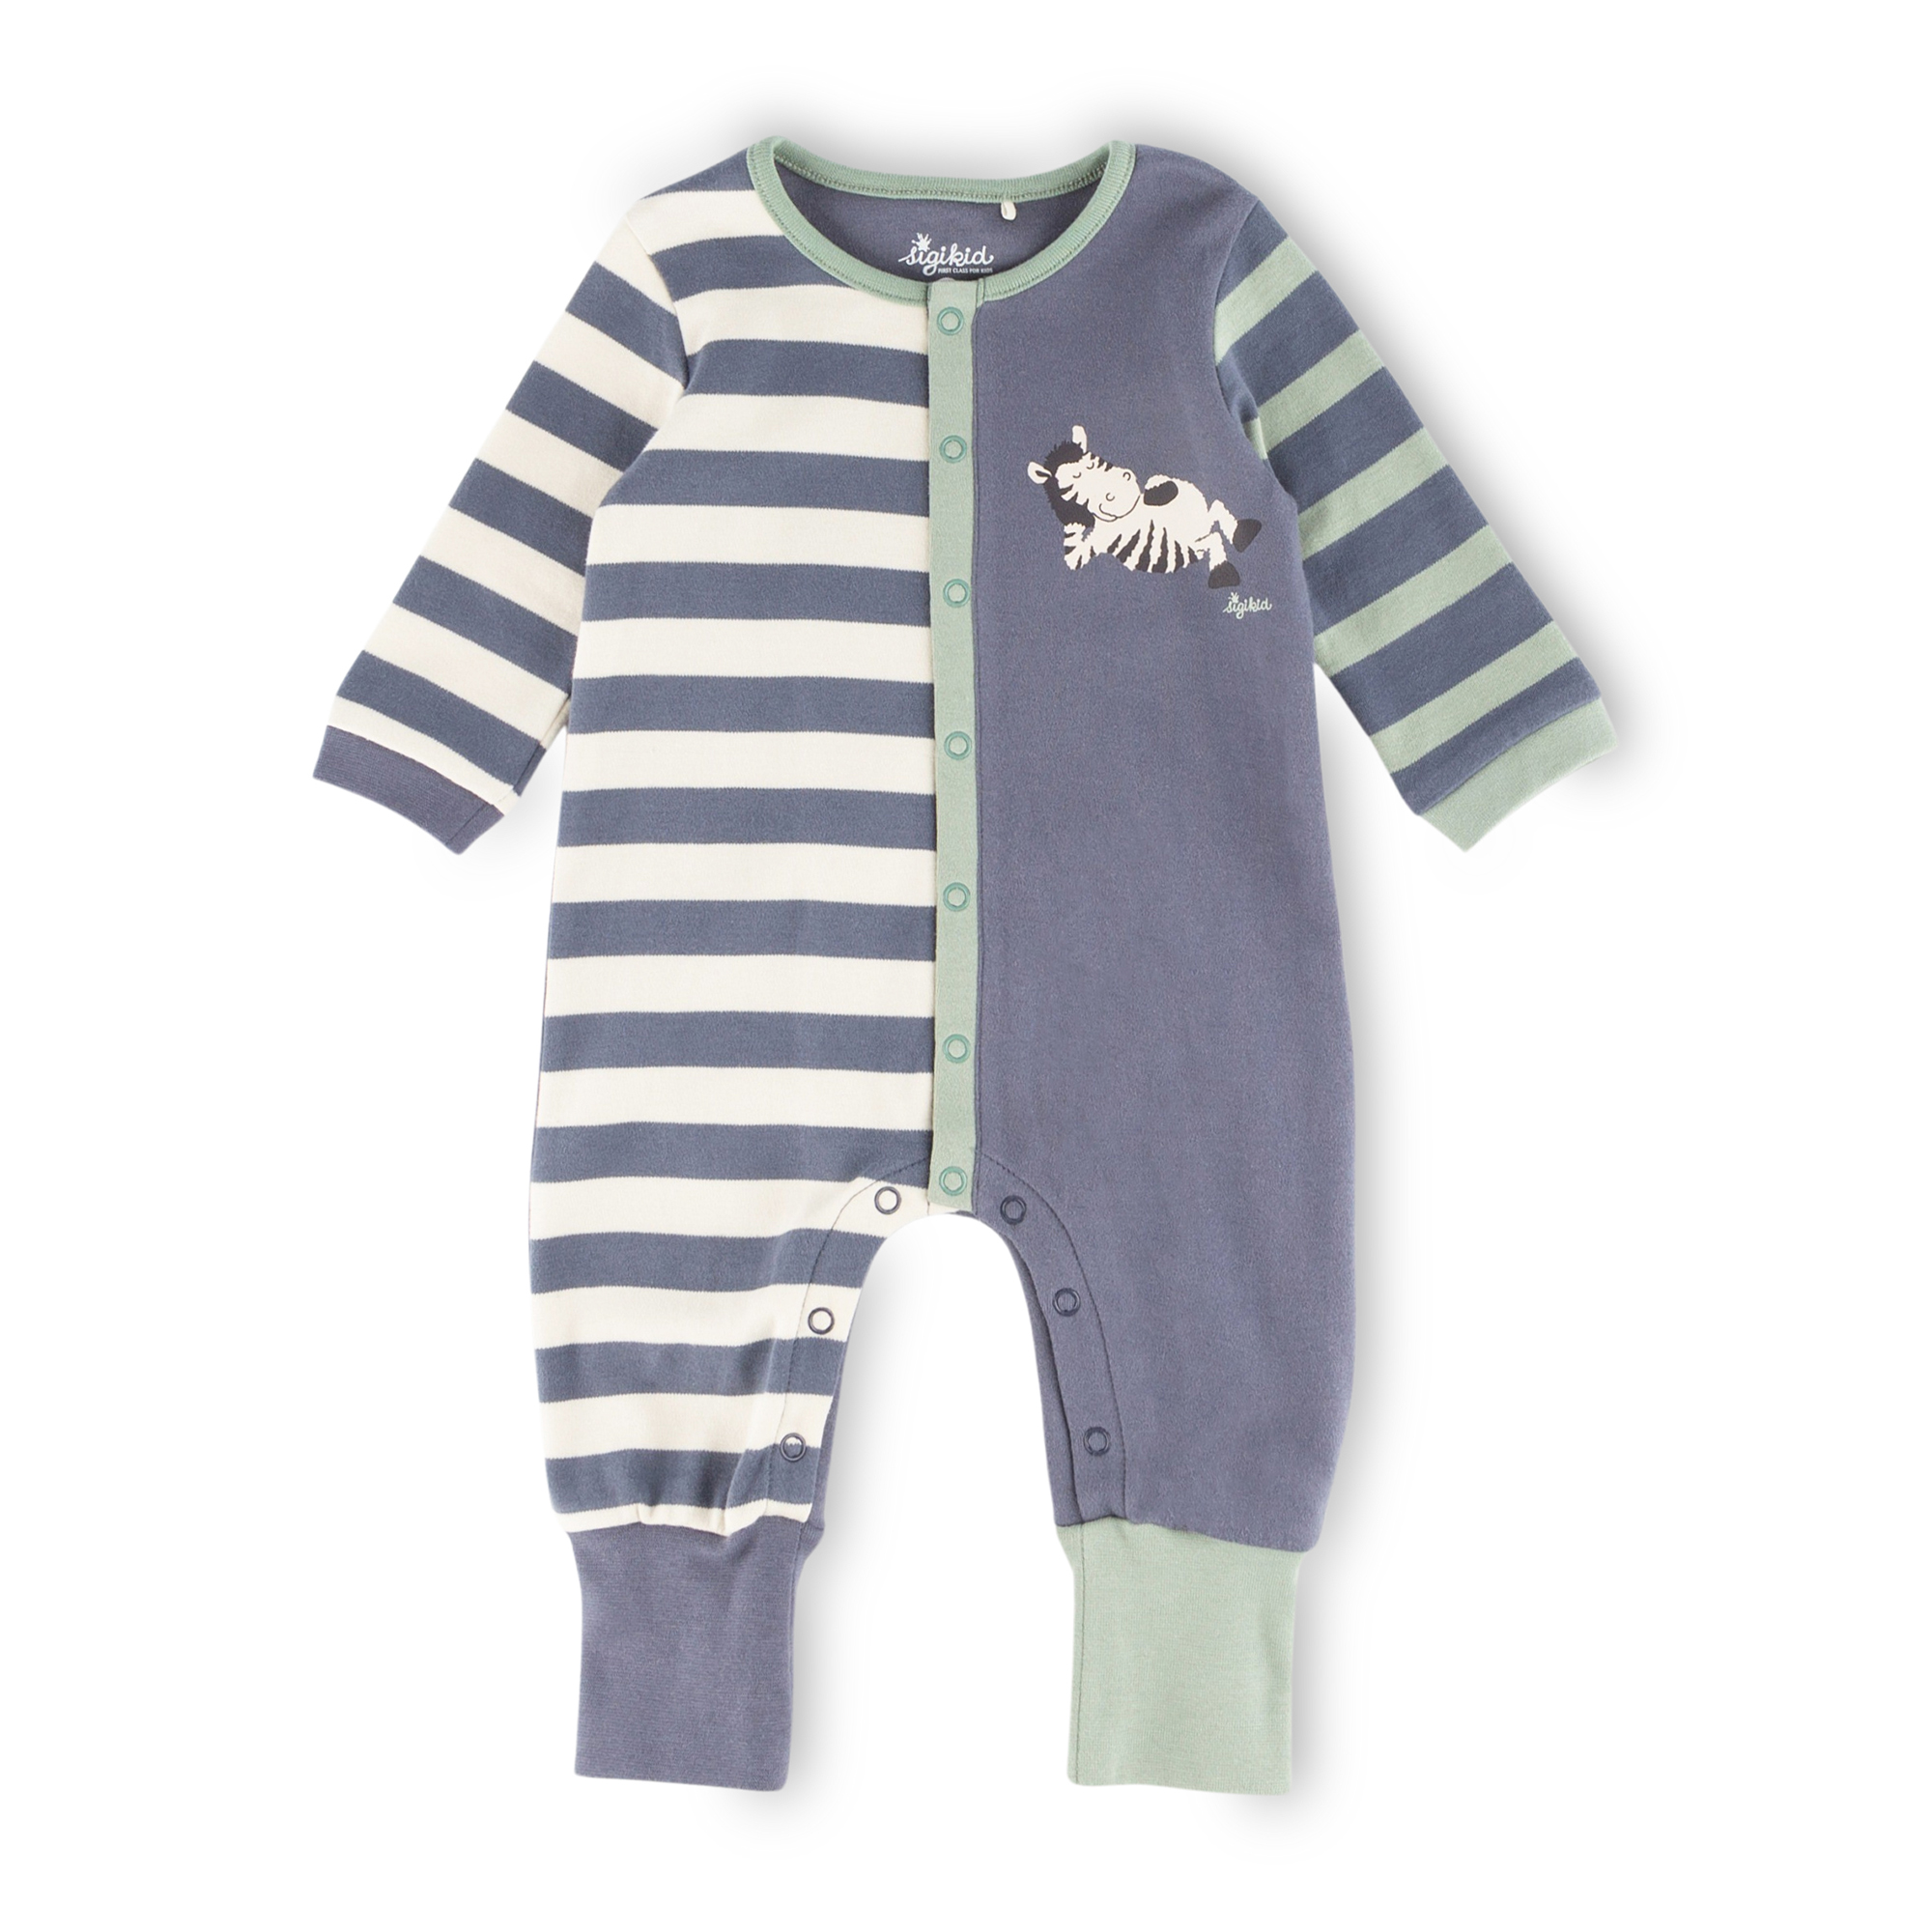 Baby sleepsuit overall zebra